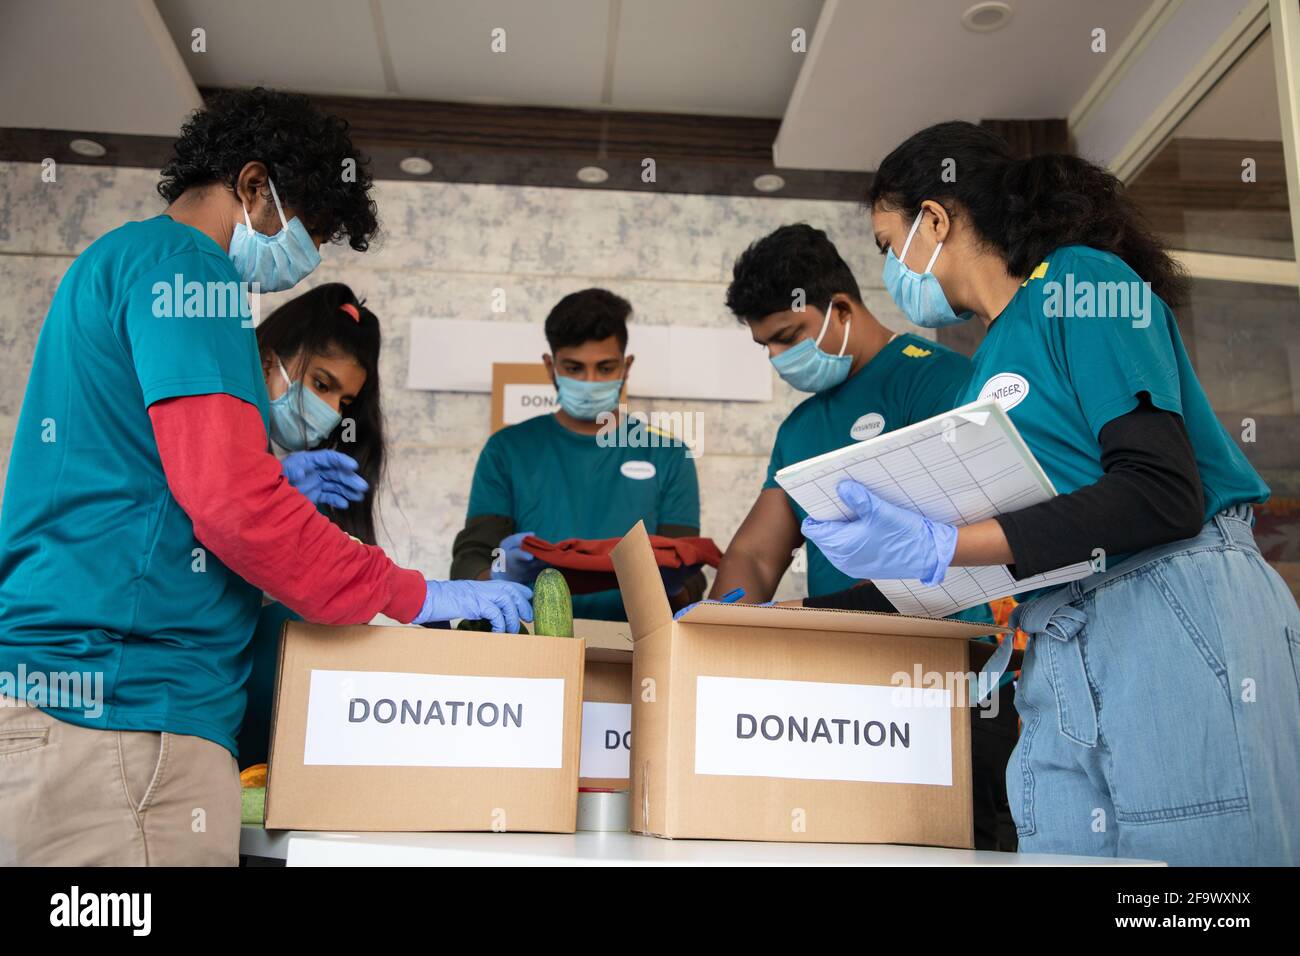 Vue à angle bas, groupe de bénévoles qui travaillent en organisant des légumes et des vêtements sur des boîtes de dons et en notant pendant le coronavirus covid-19 Banque D'Images